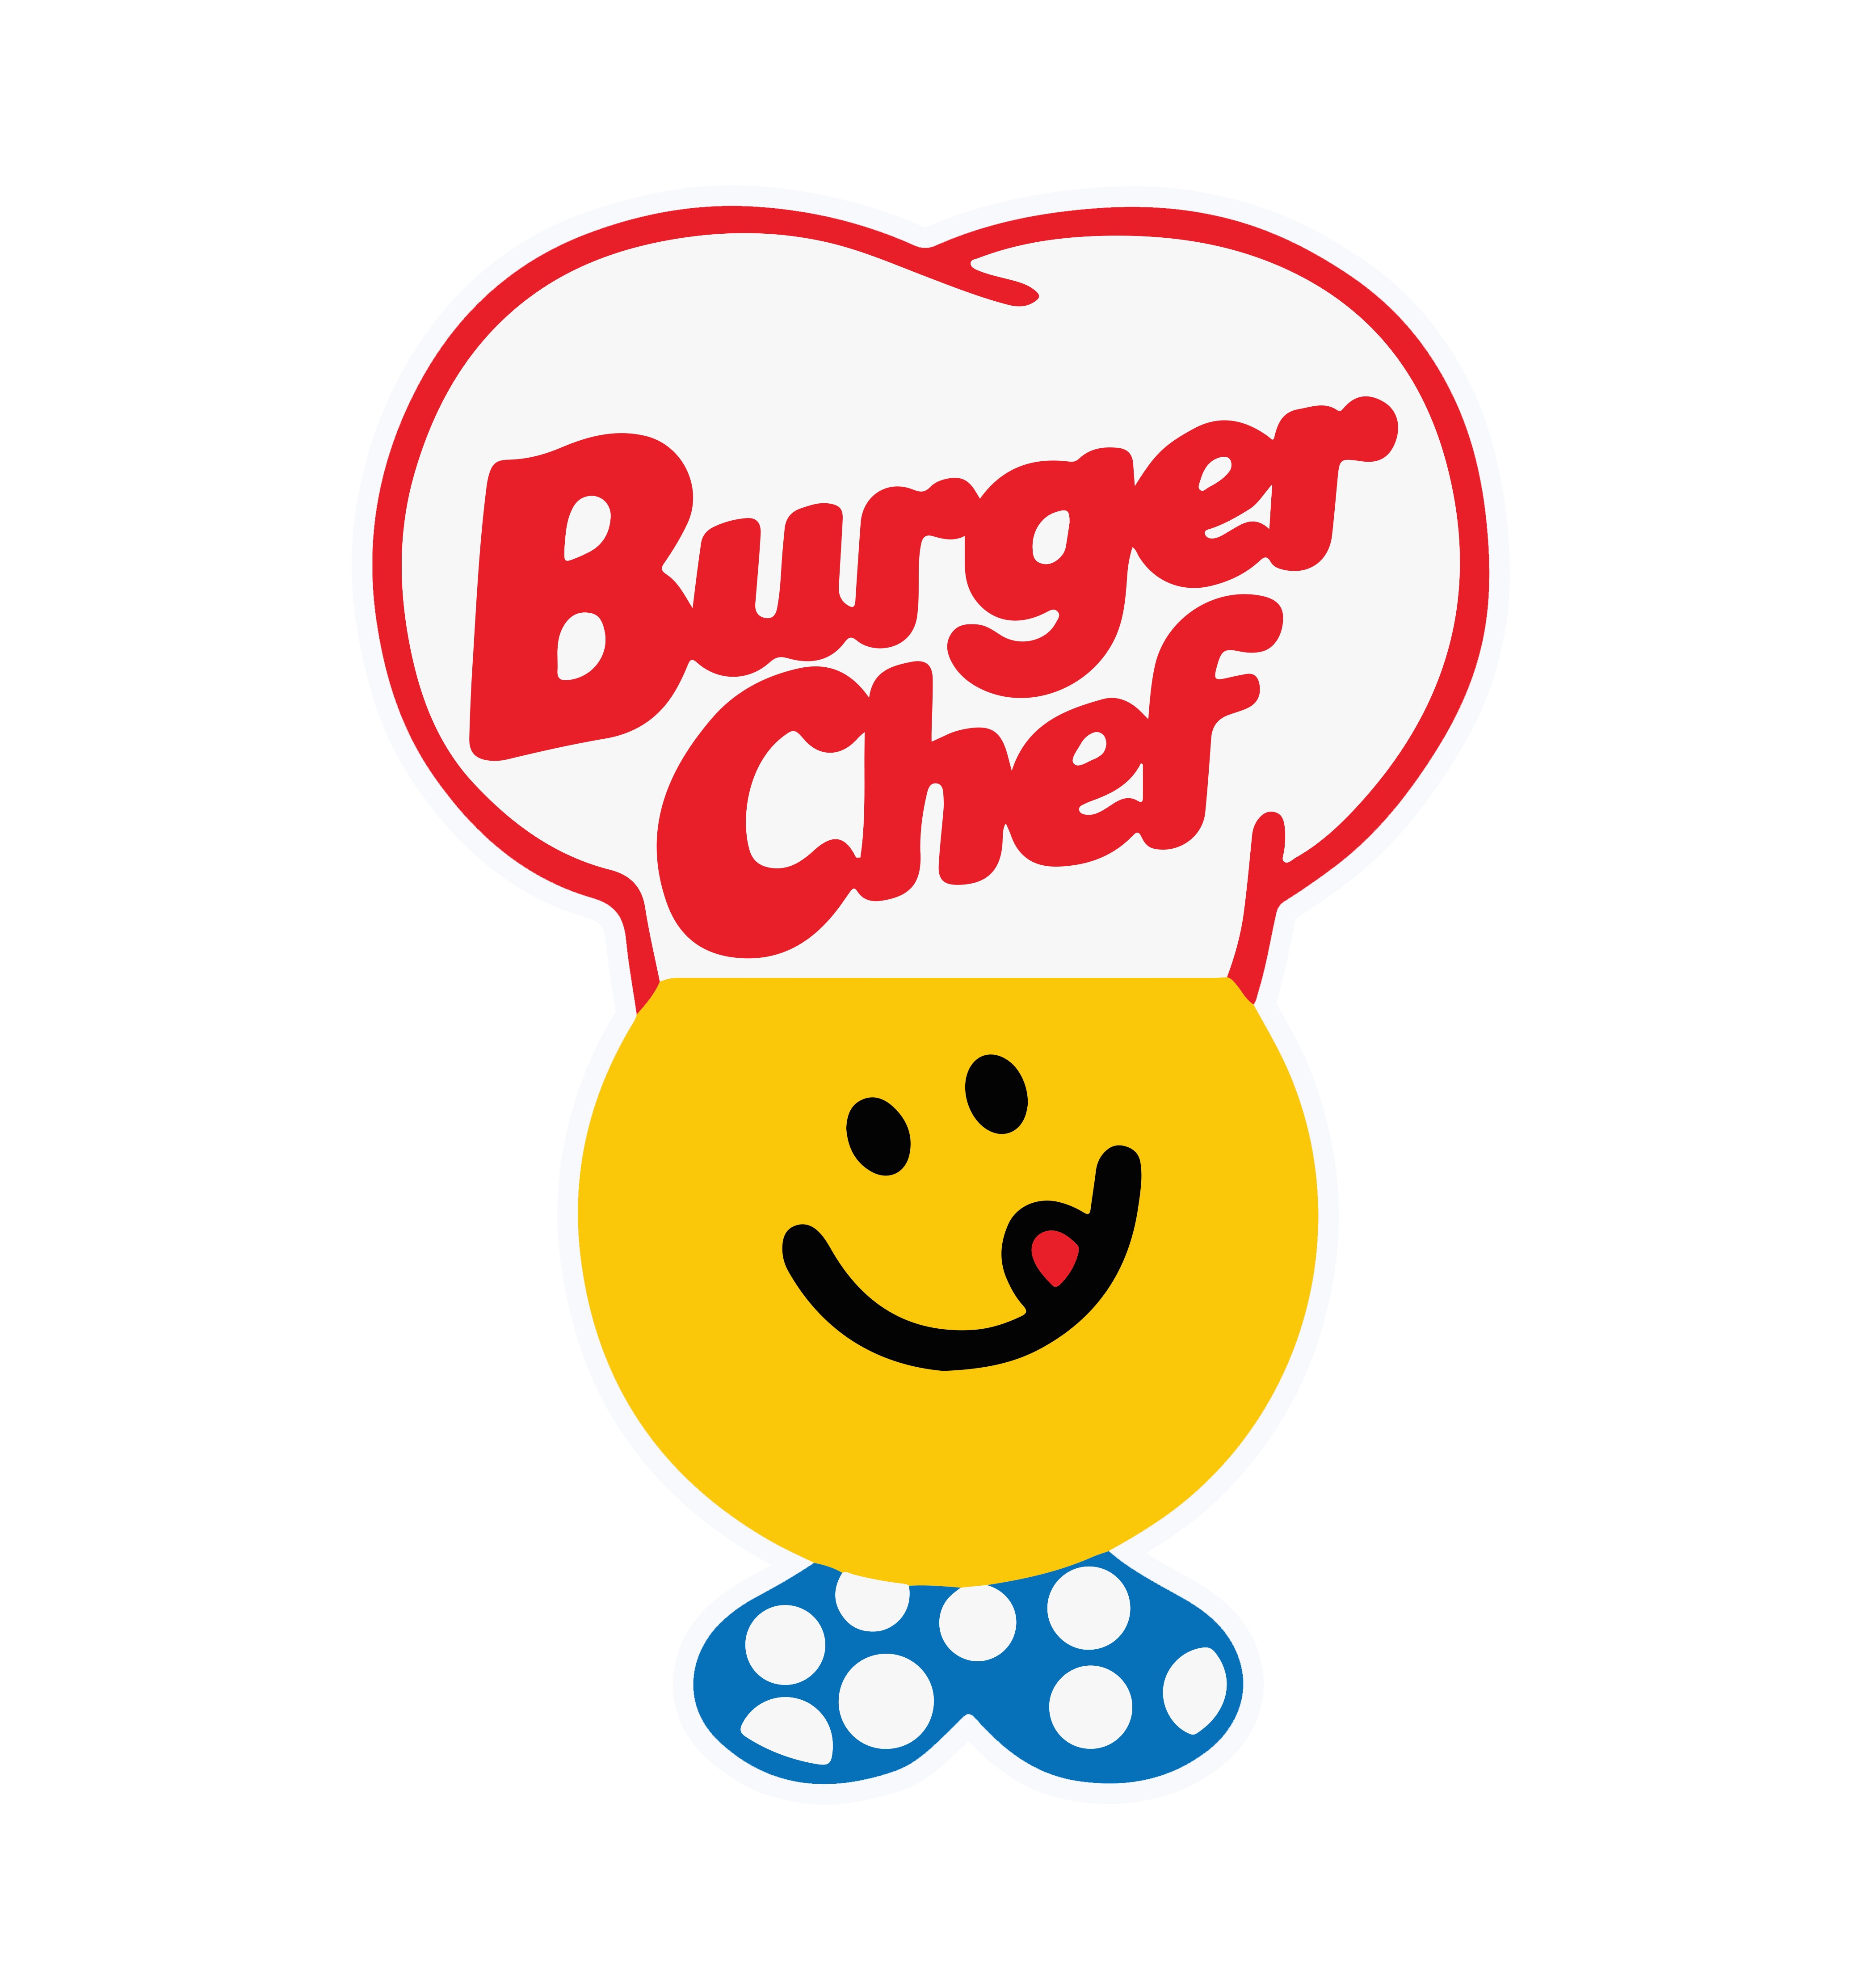 Burger Chef Sticker Vintage